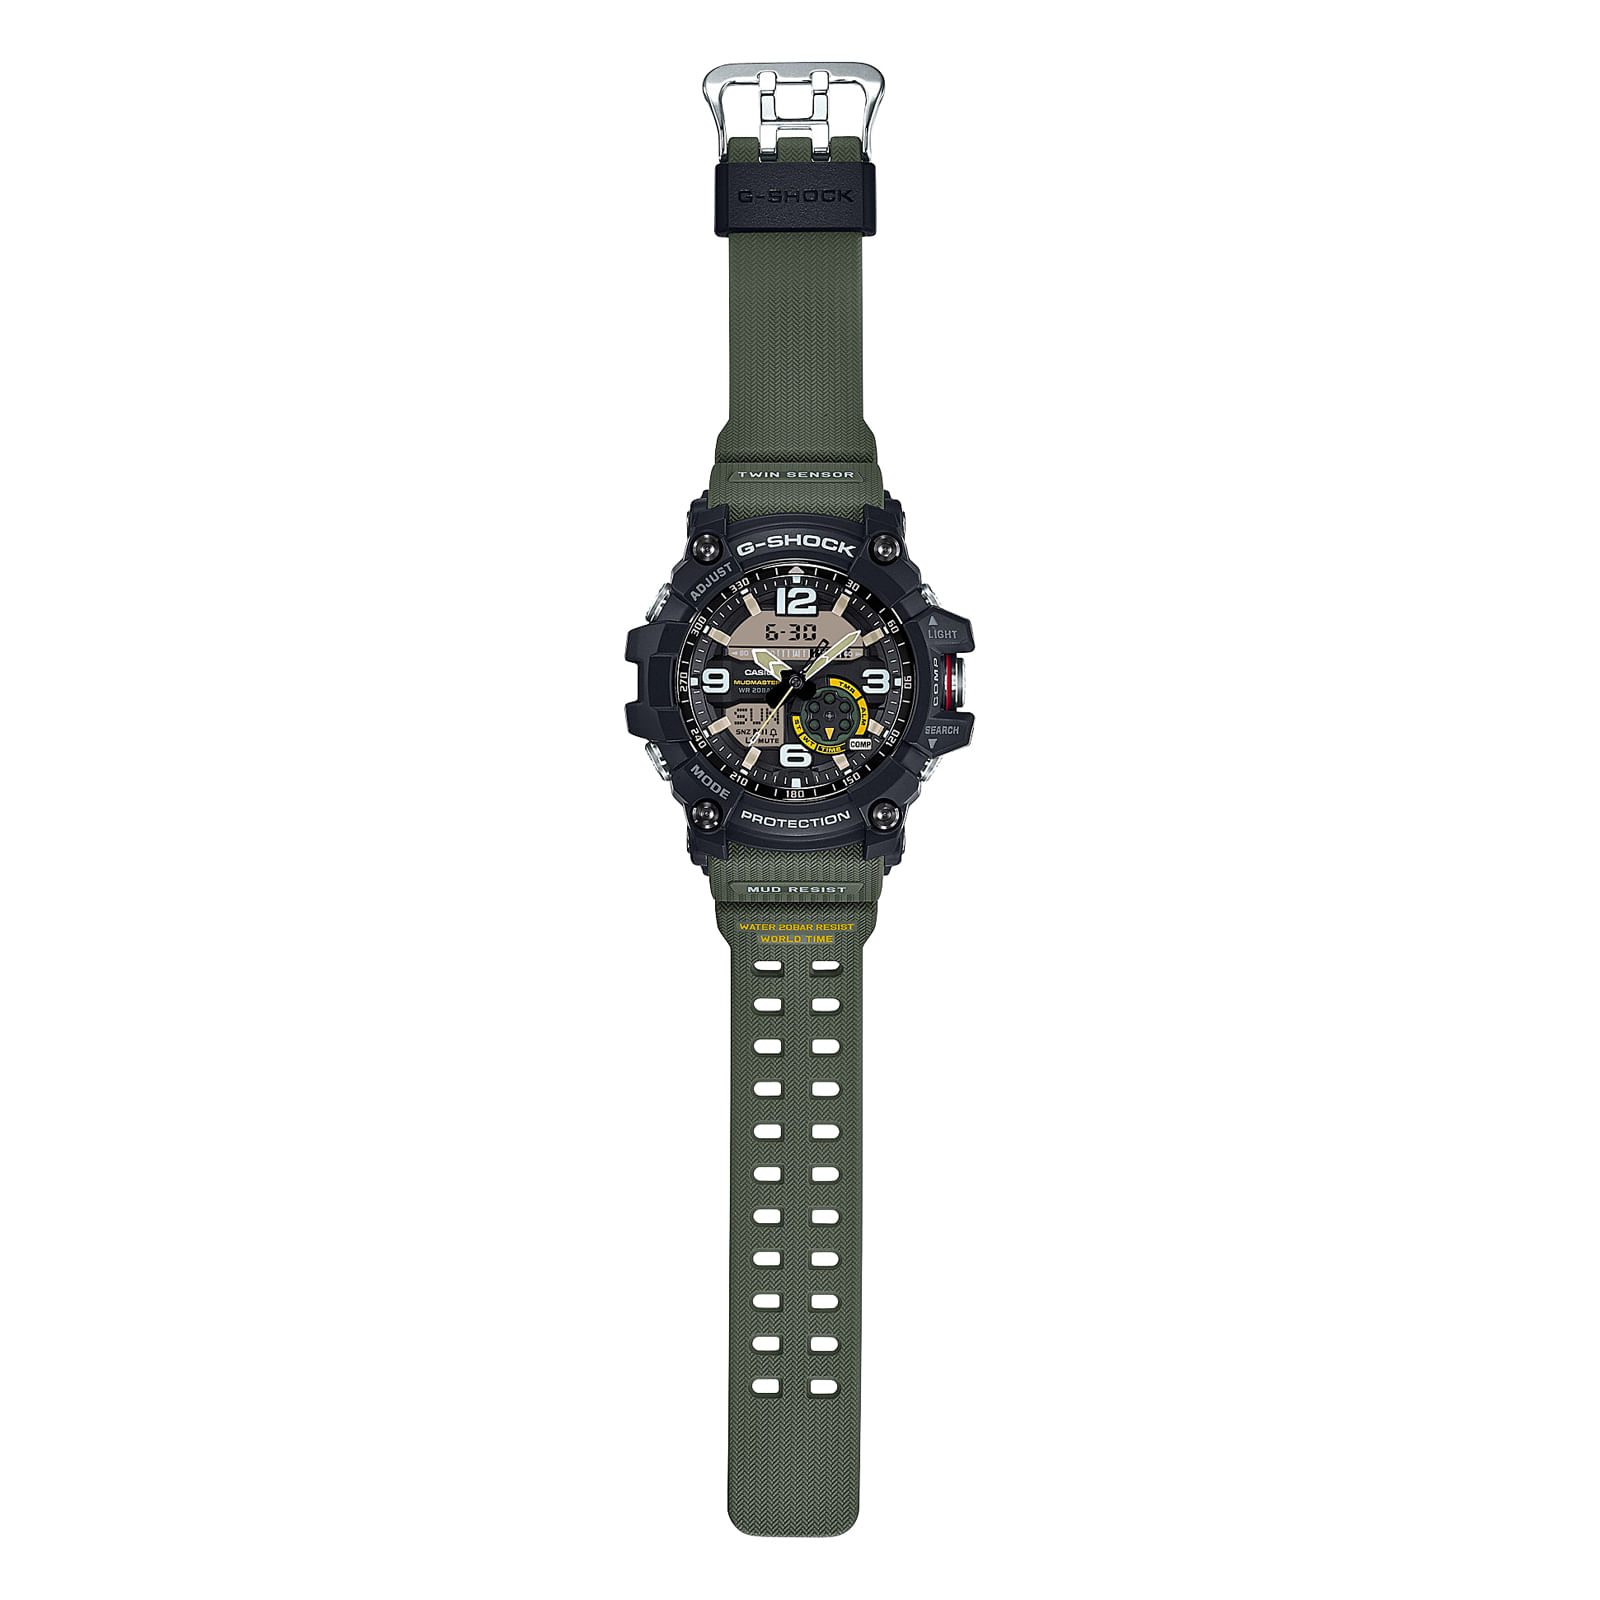 Reloj G-SHOCK GG-1000-1A3 Resina/Acero Hombre Negro